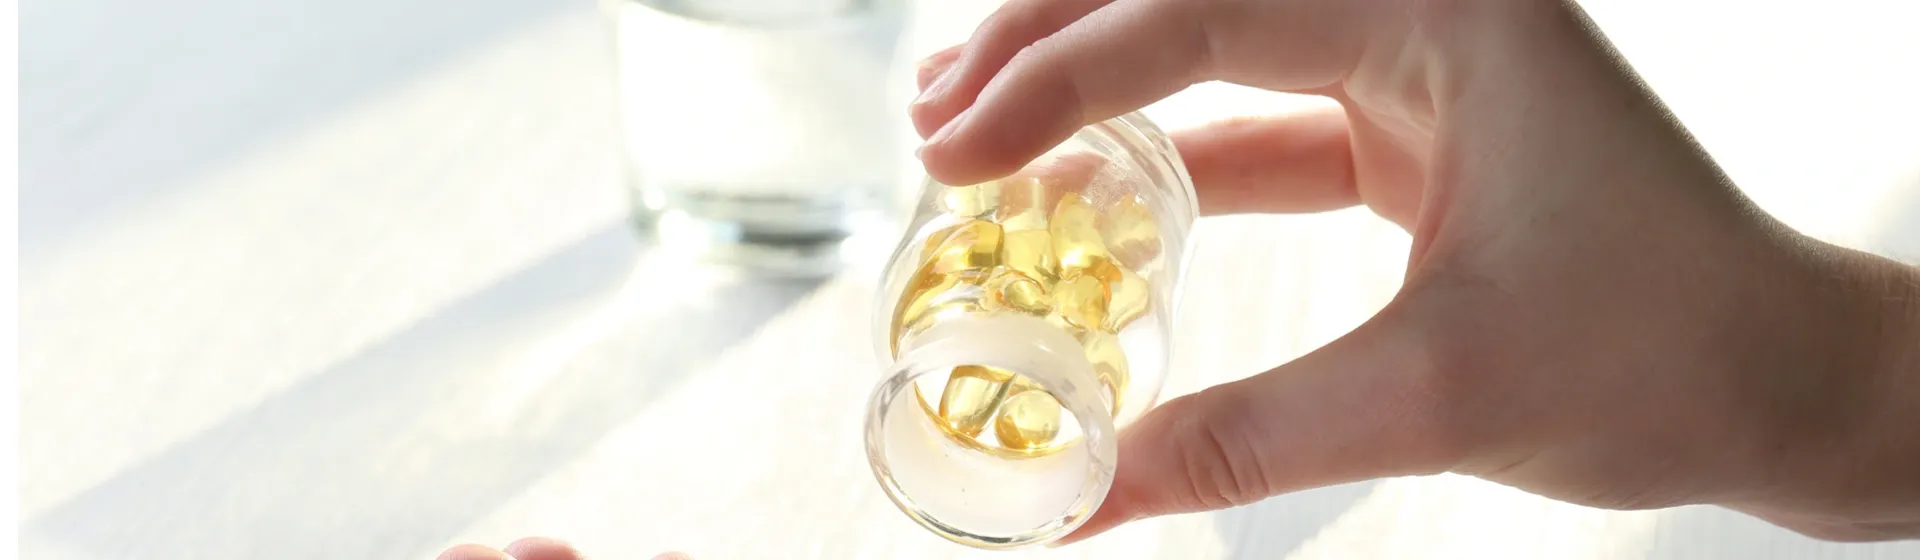 Comprimidos de vitamina D 10.000 Ui nas mãos de uma mulher branca